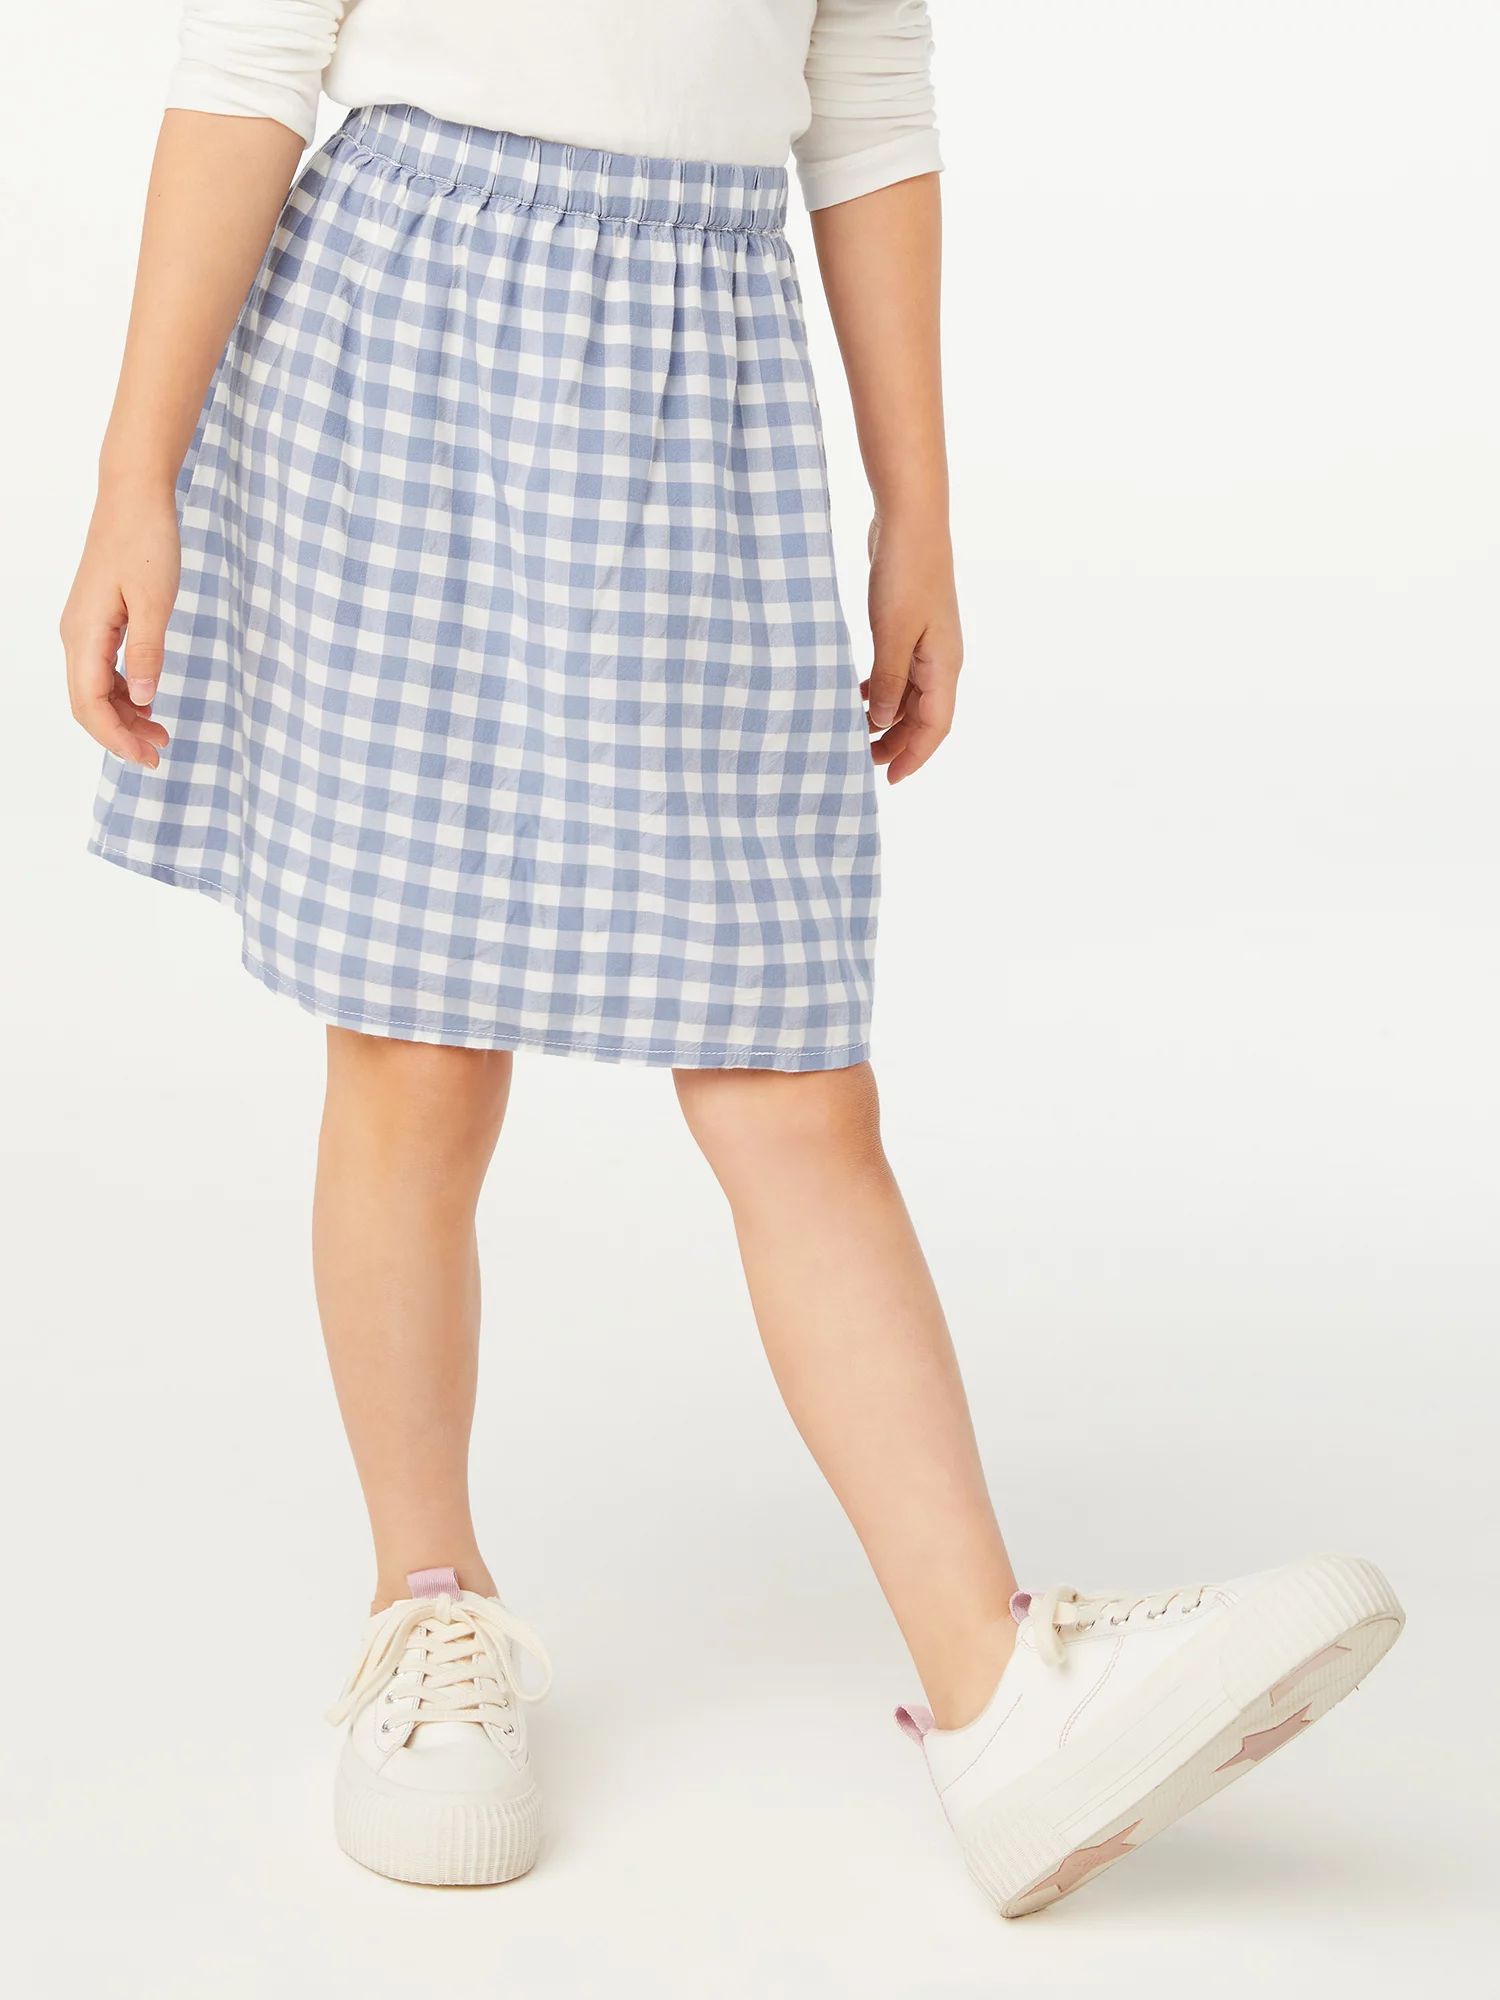 Free Assembly Girls Sheer Overlay Pull-On Skirt, Sizes 4-18 & Plus | Walmart (US)